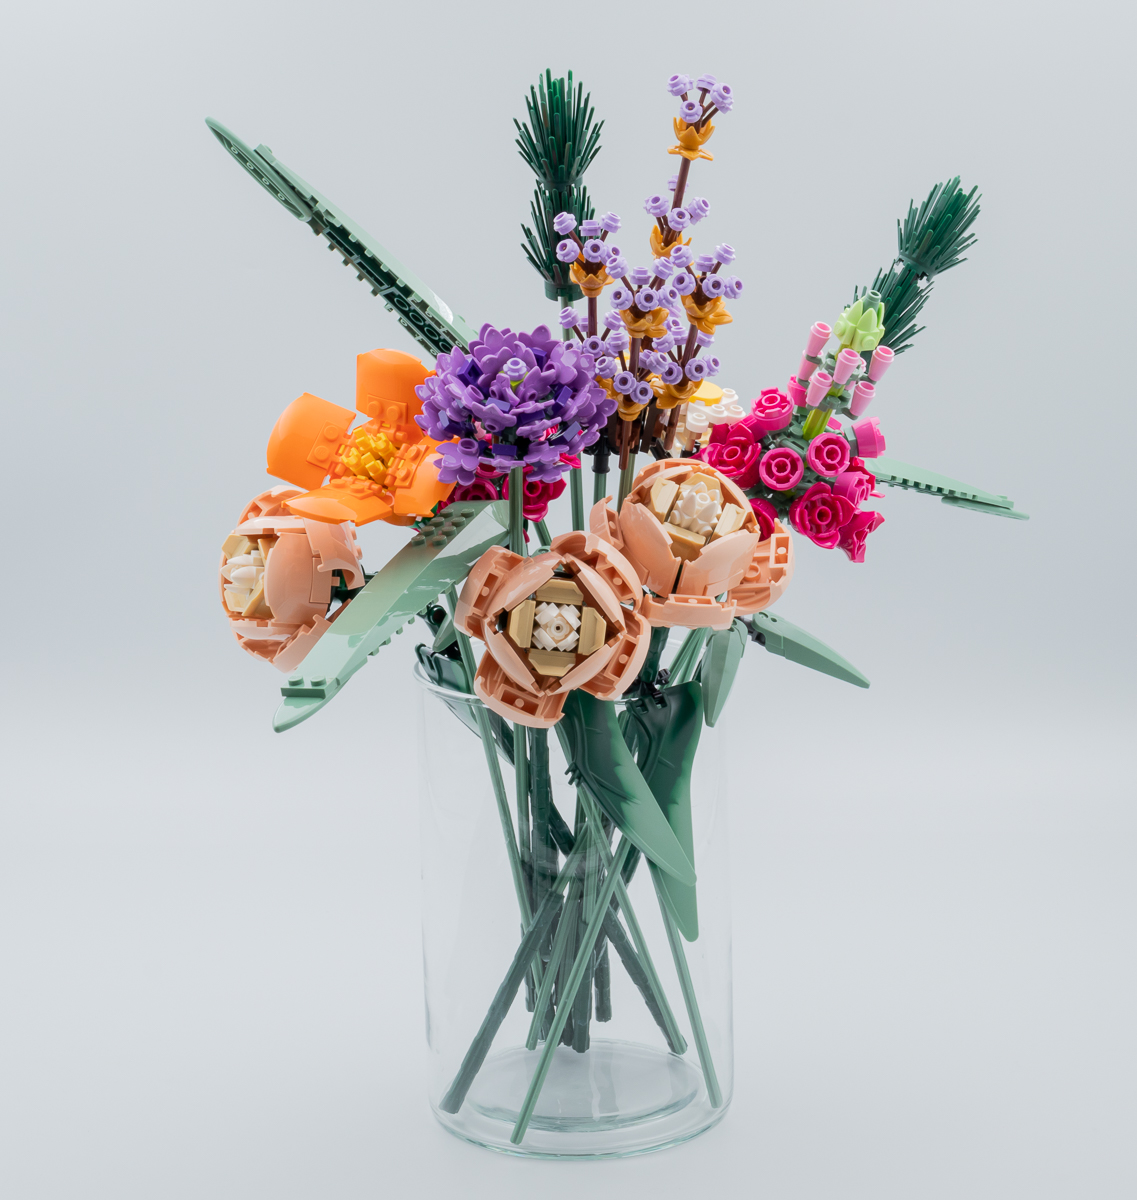 ▻ Vite testé : LEGO Botanical Collection 10280 Flower Bouquet